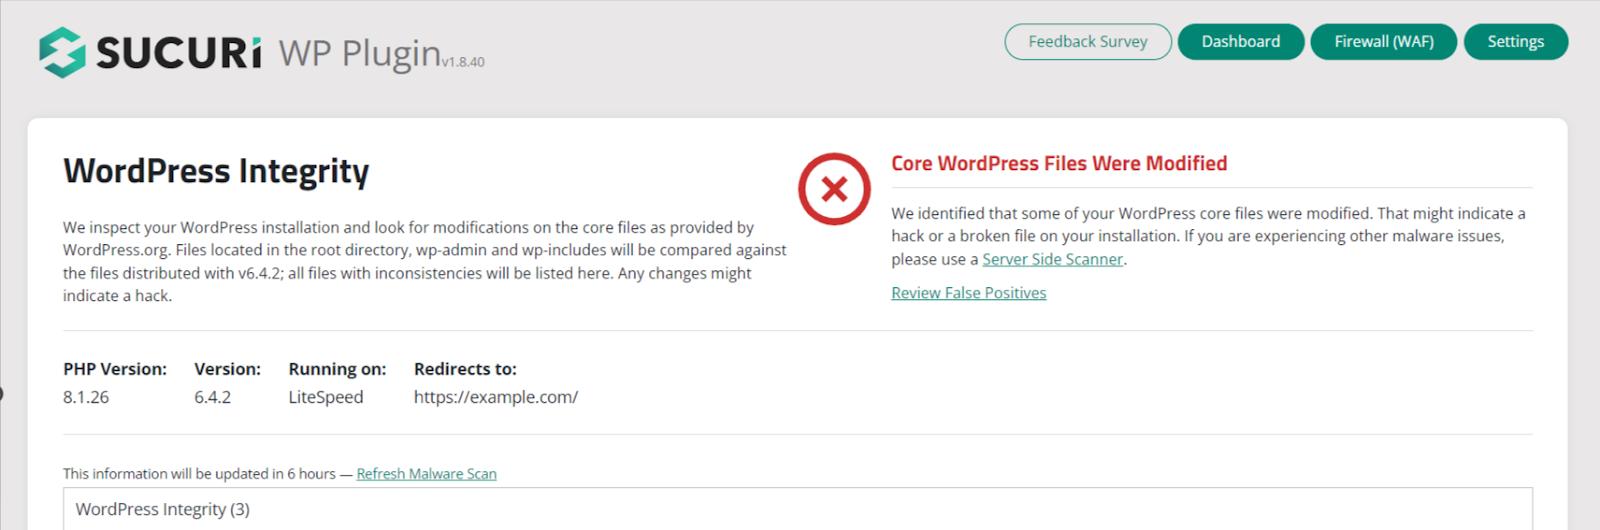 installer le plugin Sucuri pour sécuriser un site WordPress